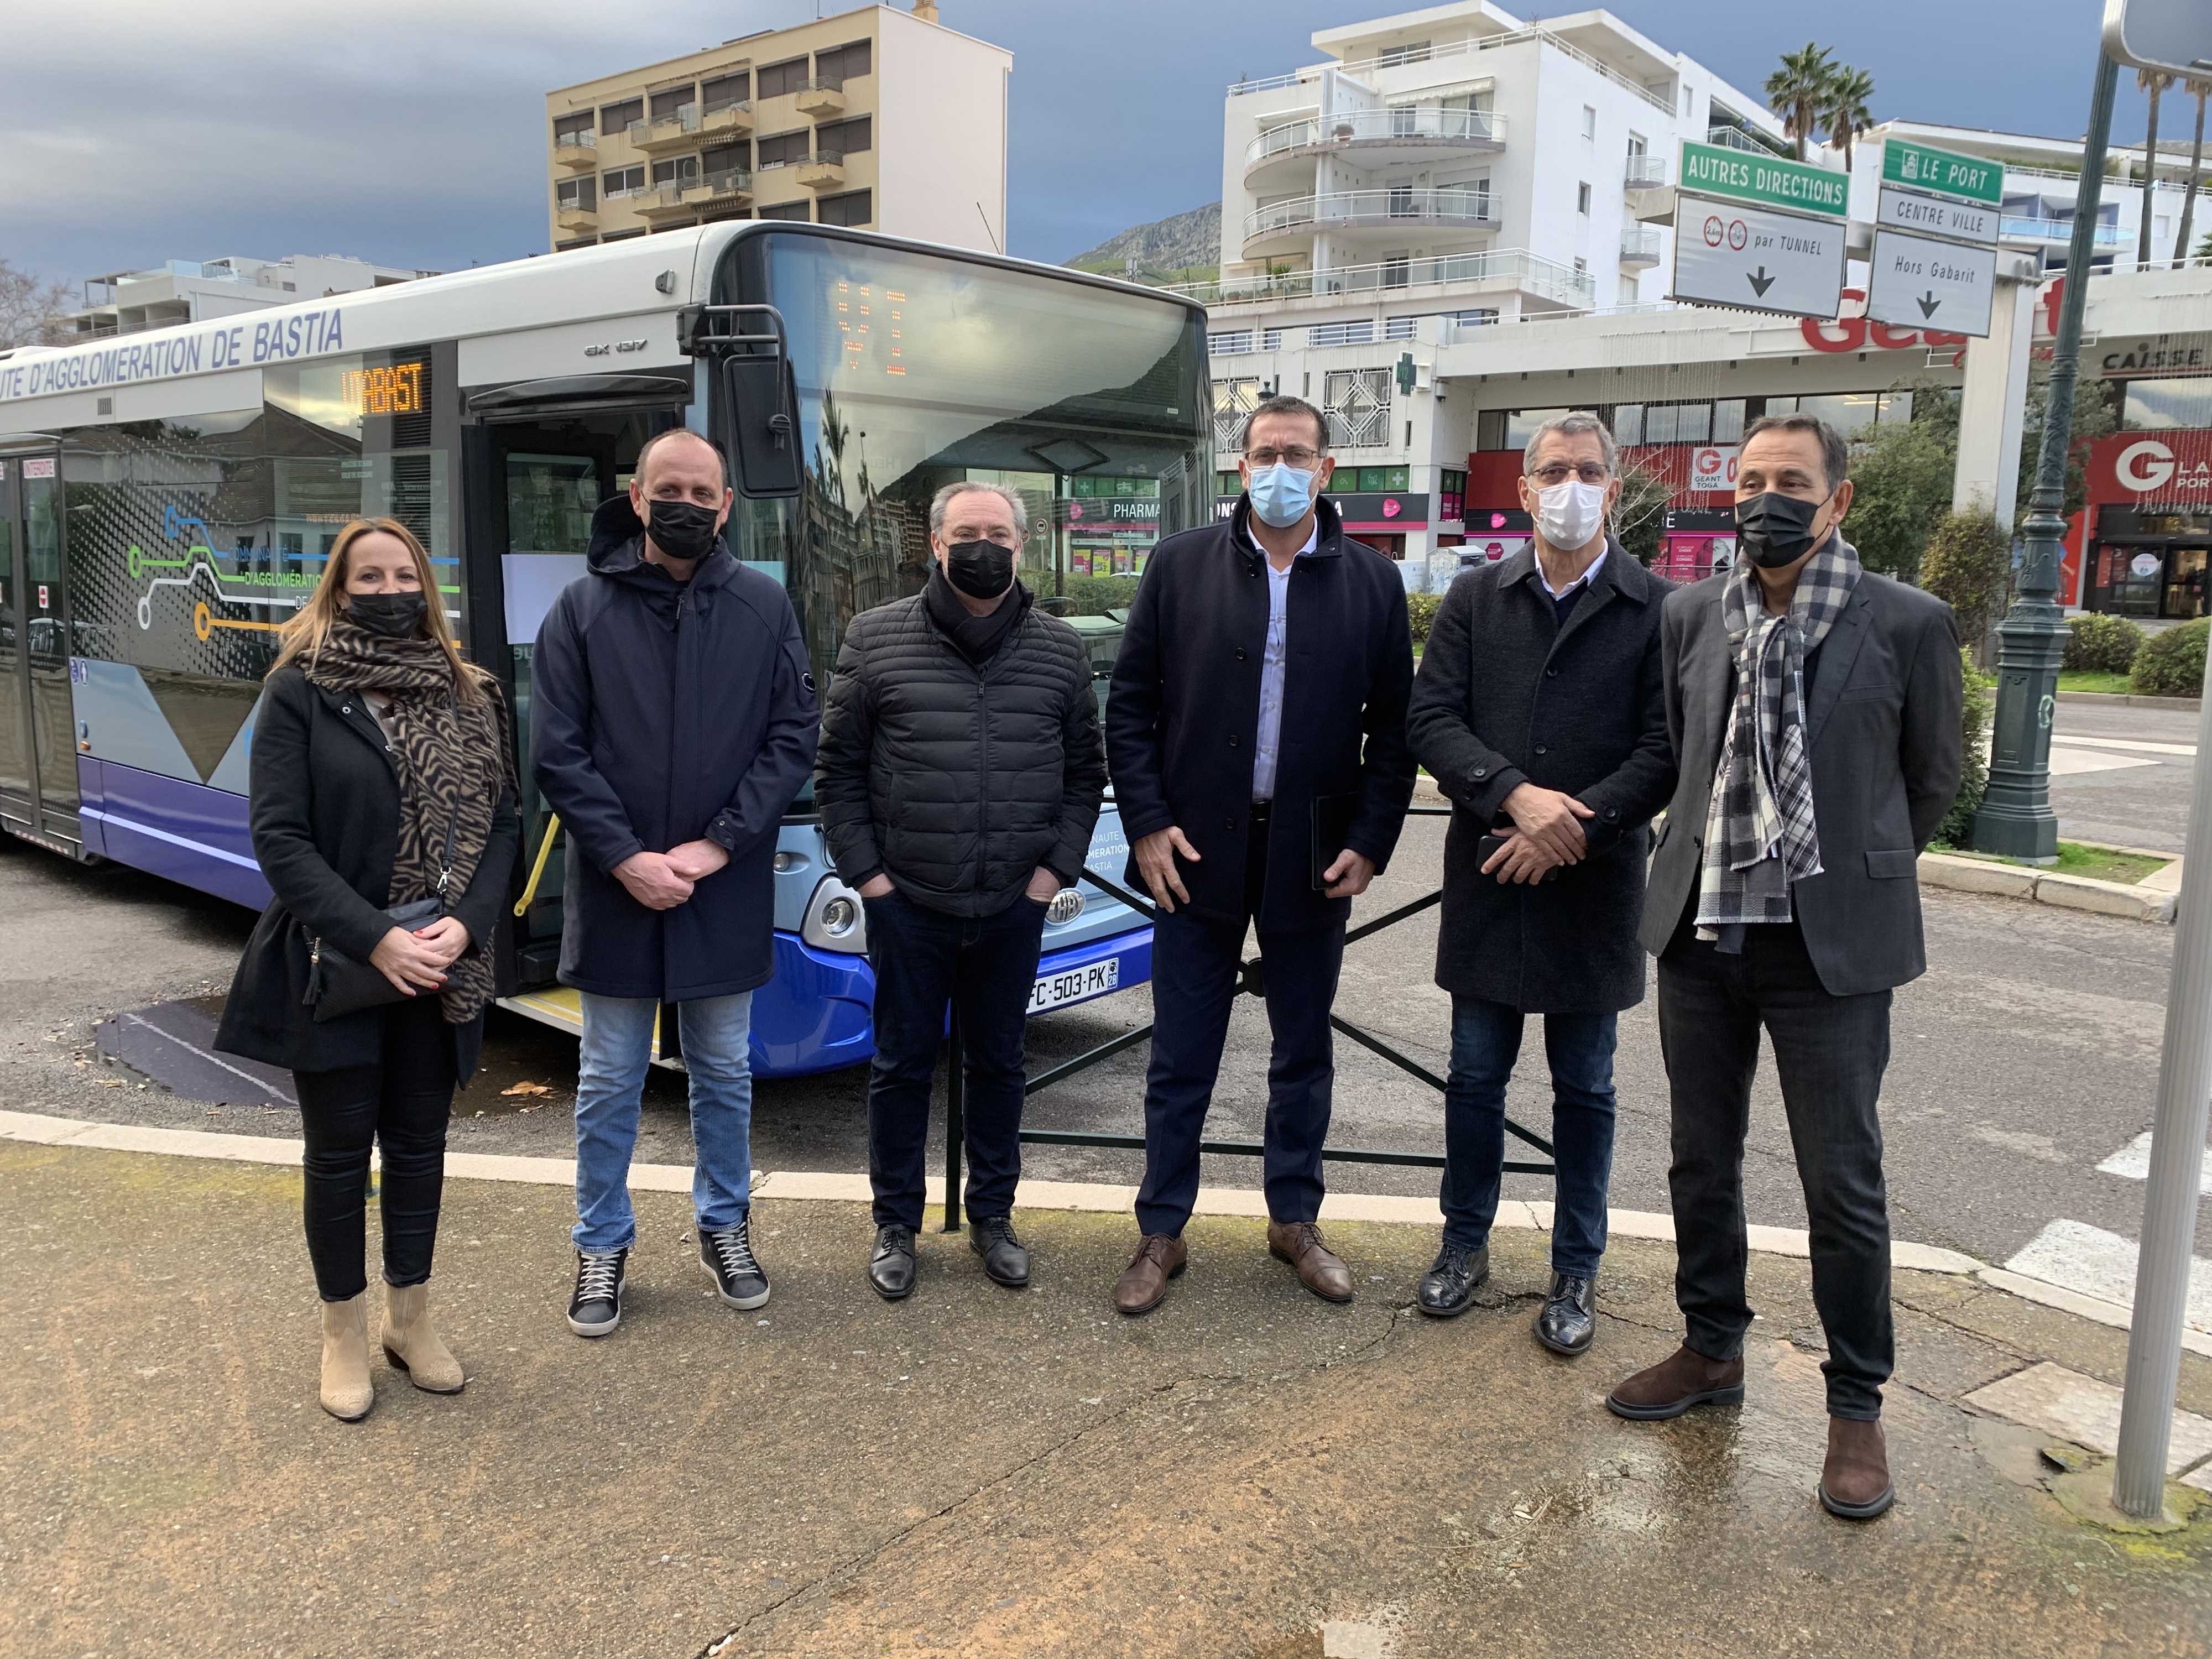 Les élus de la CAB ont présenté mardi matin Via Bastia, le nouveau réseau de bus de l'agglomération bastiaise.